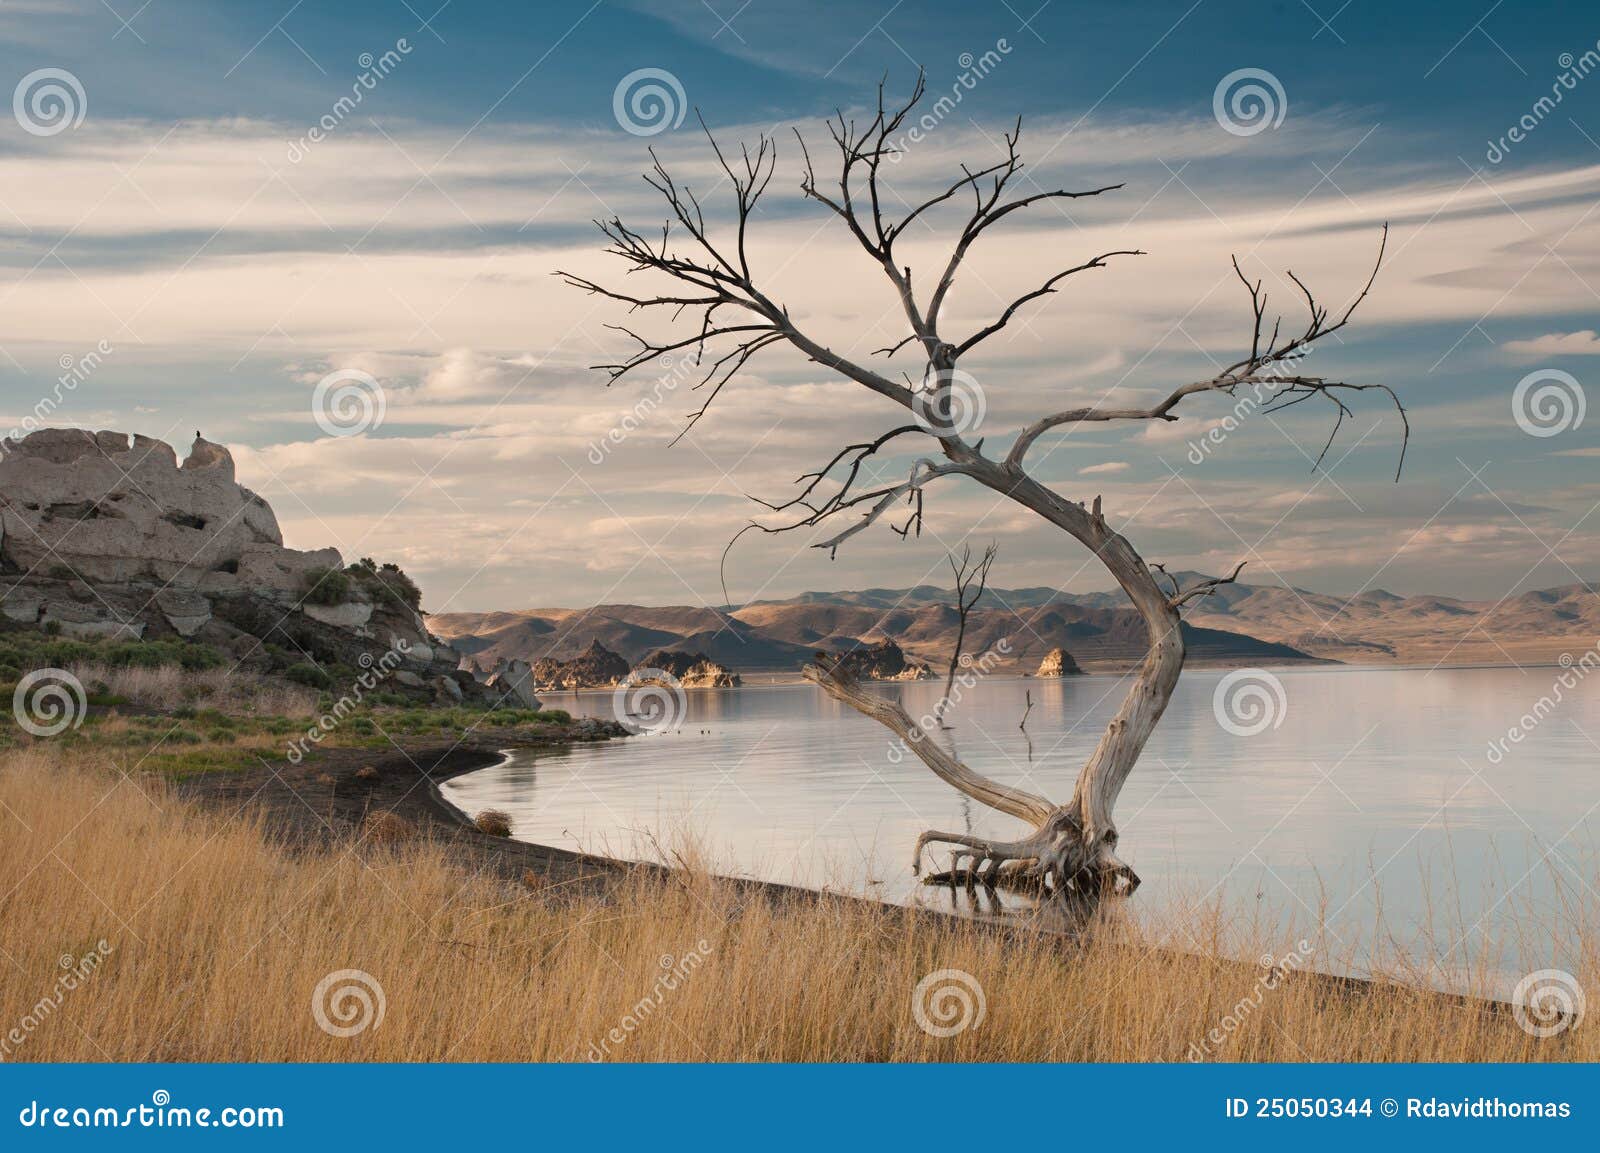 barren tree in desert oasis